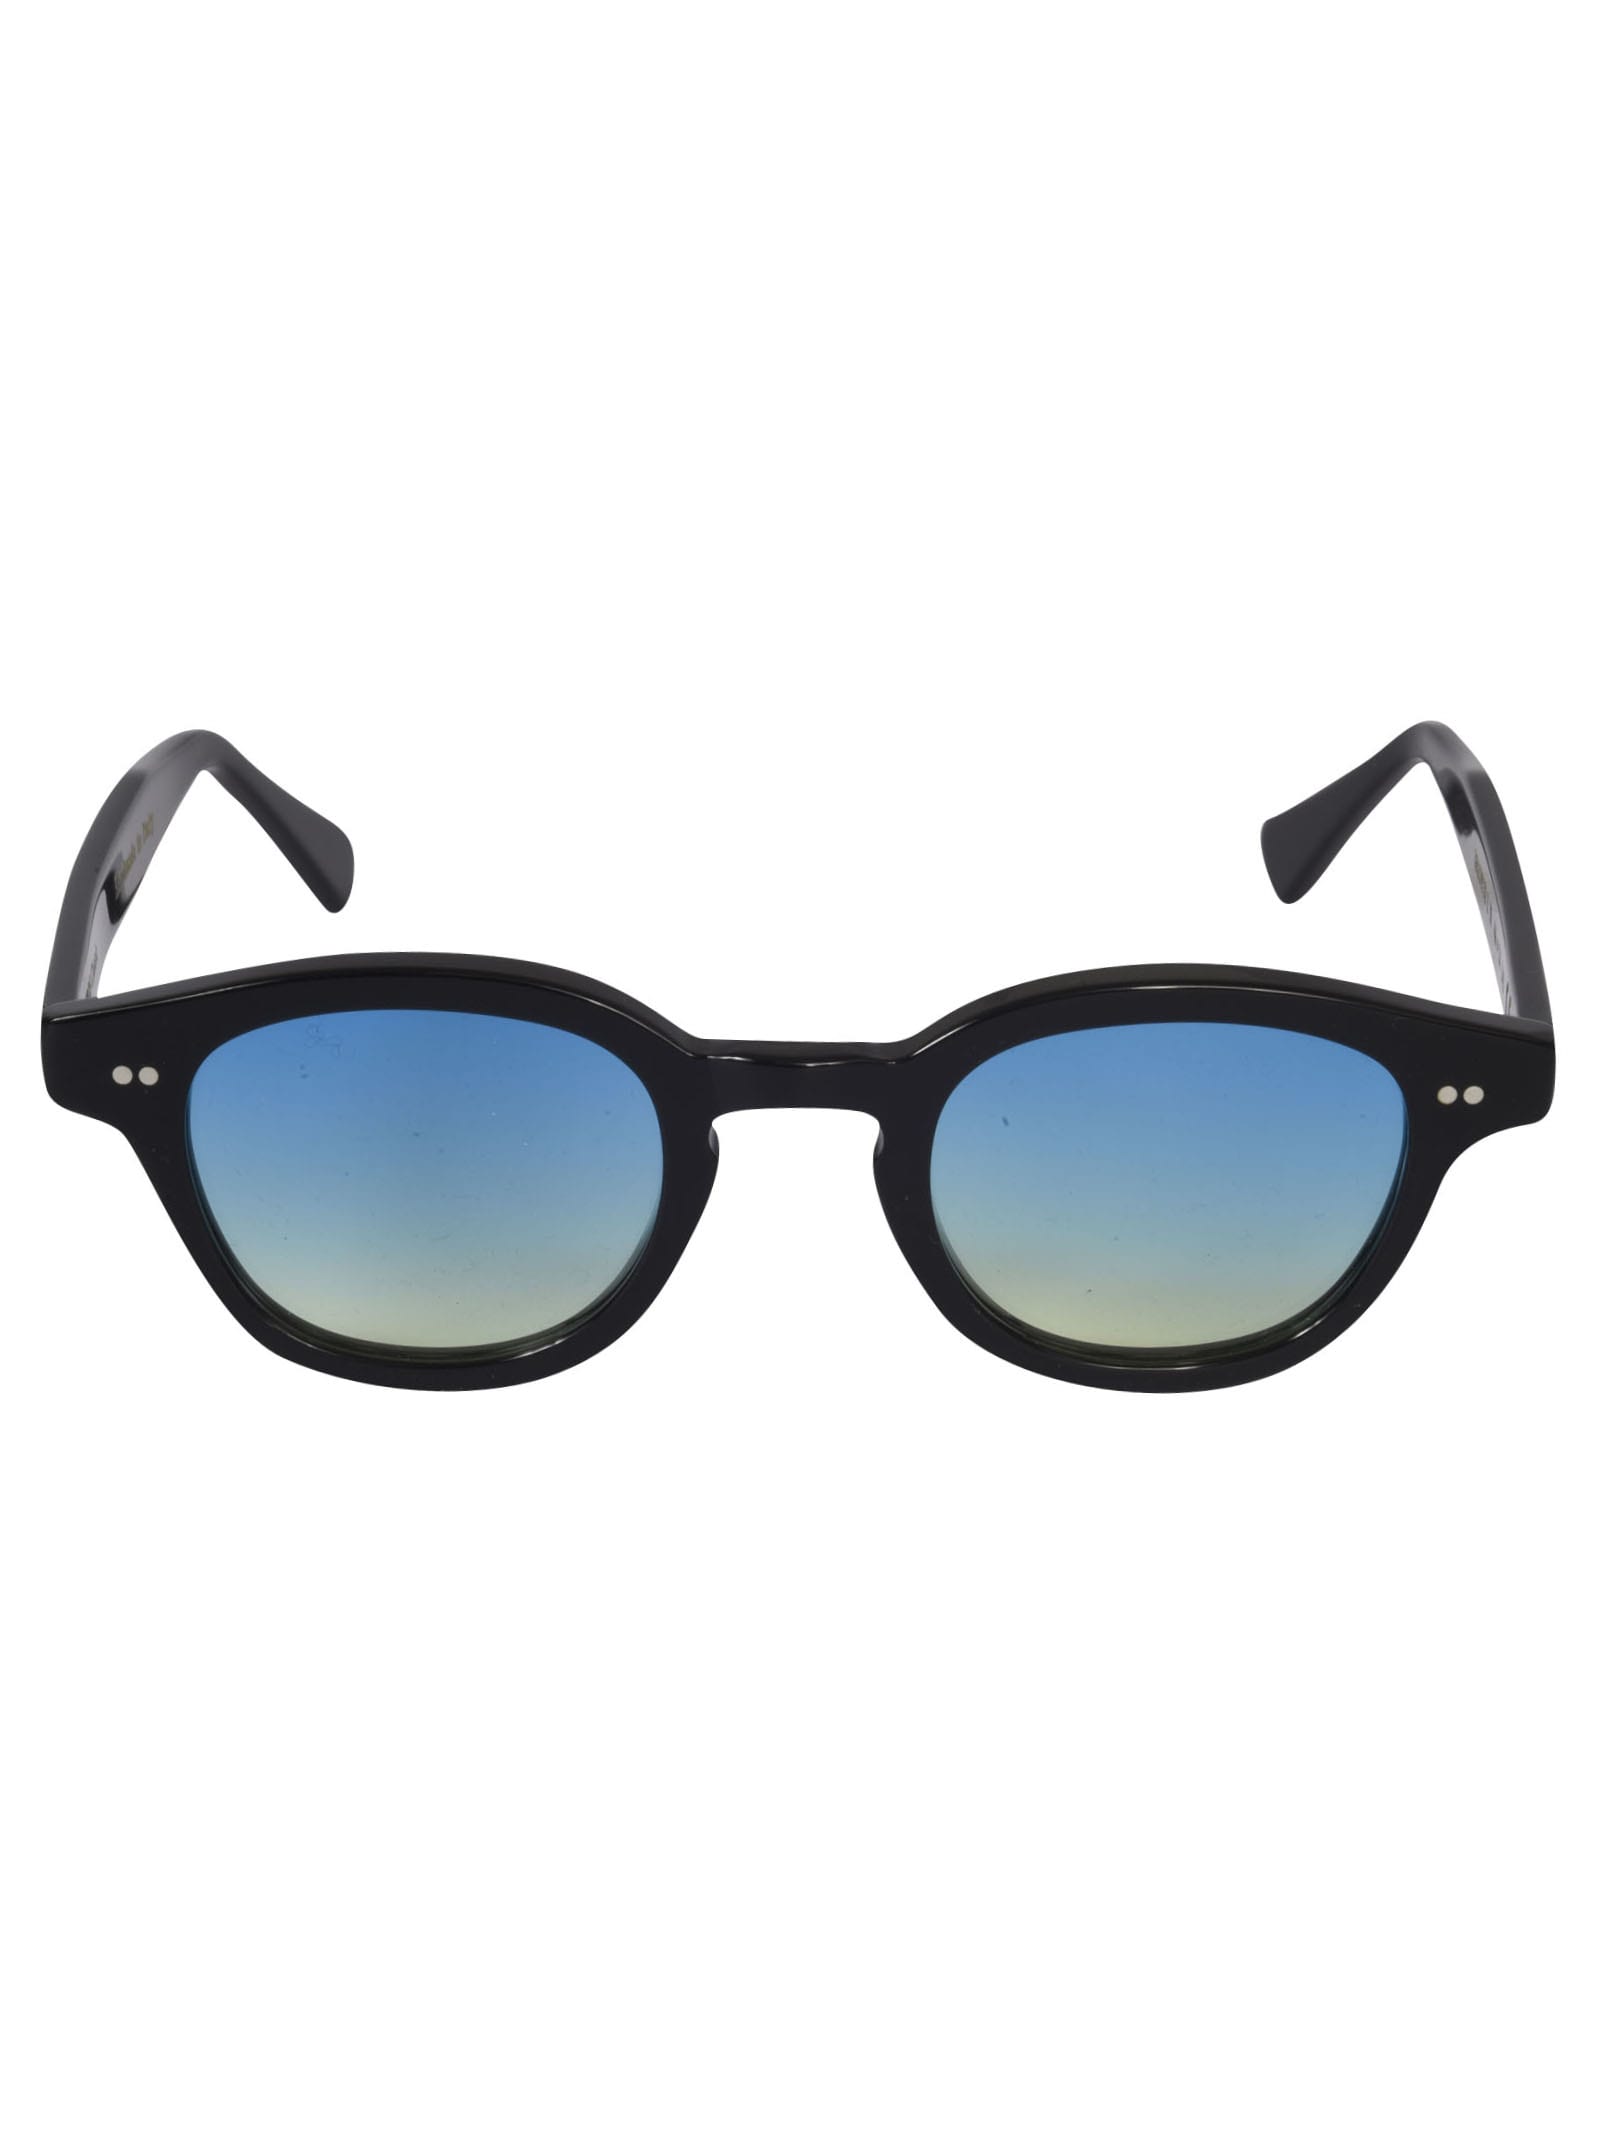 Epos Bronte 2n Sunglasses In Black/blue